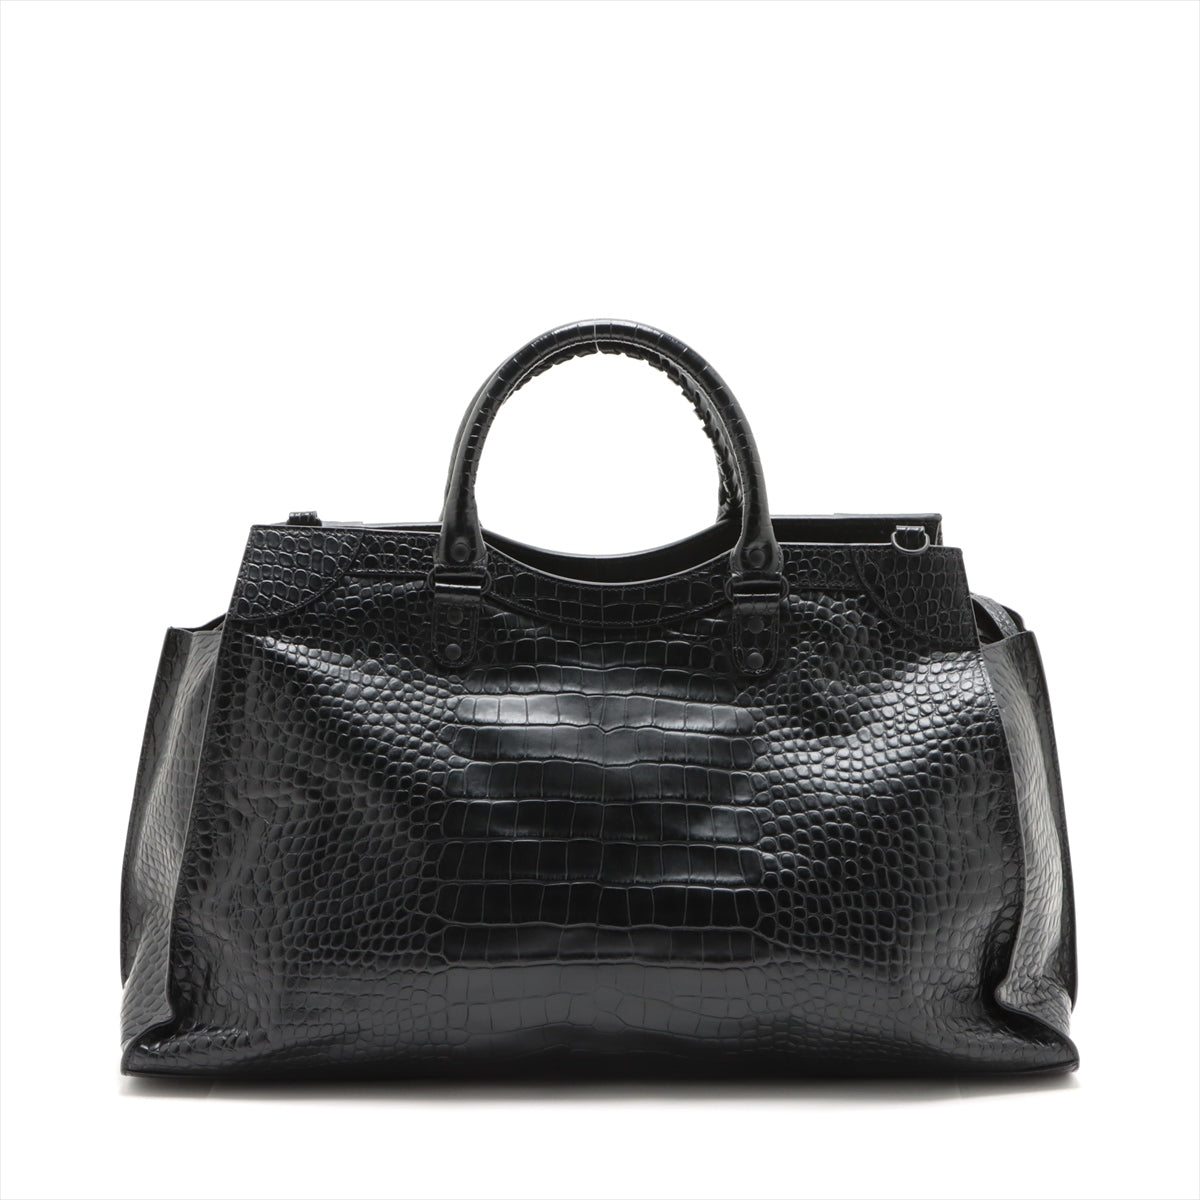 Balenciaga Neo-classics Moc croc 2way handbag Black 660005